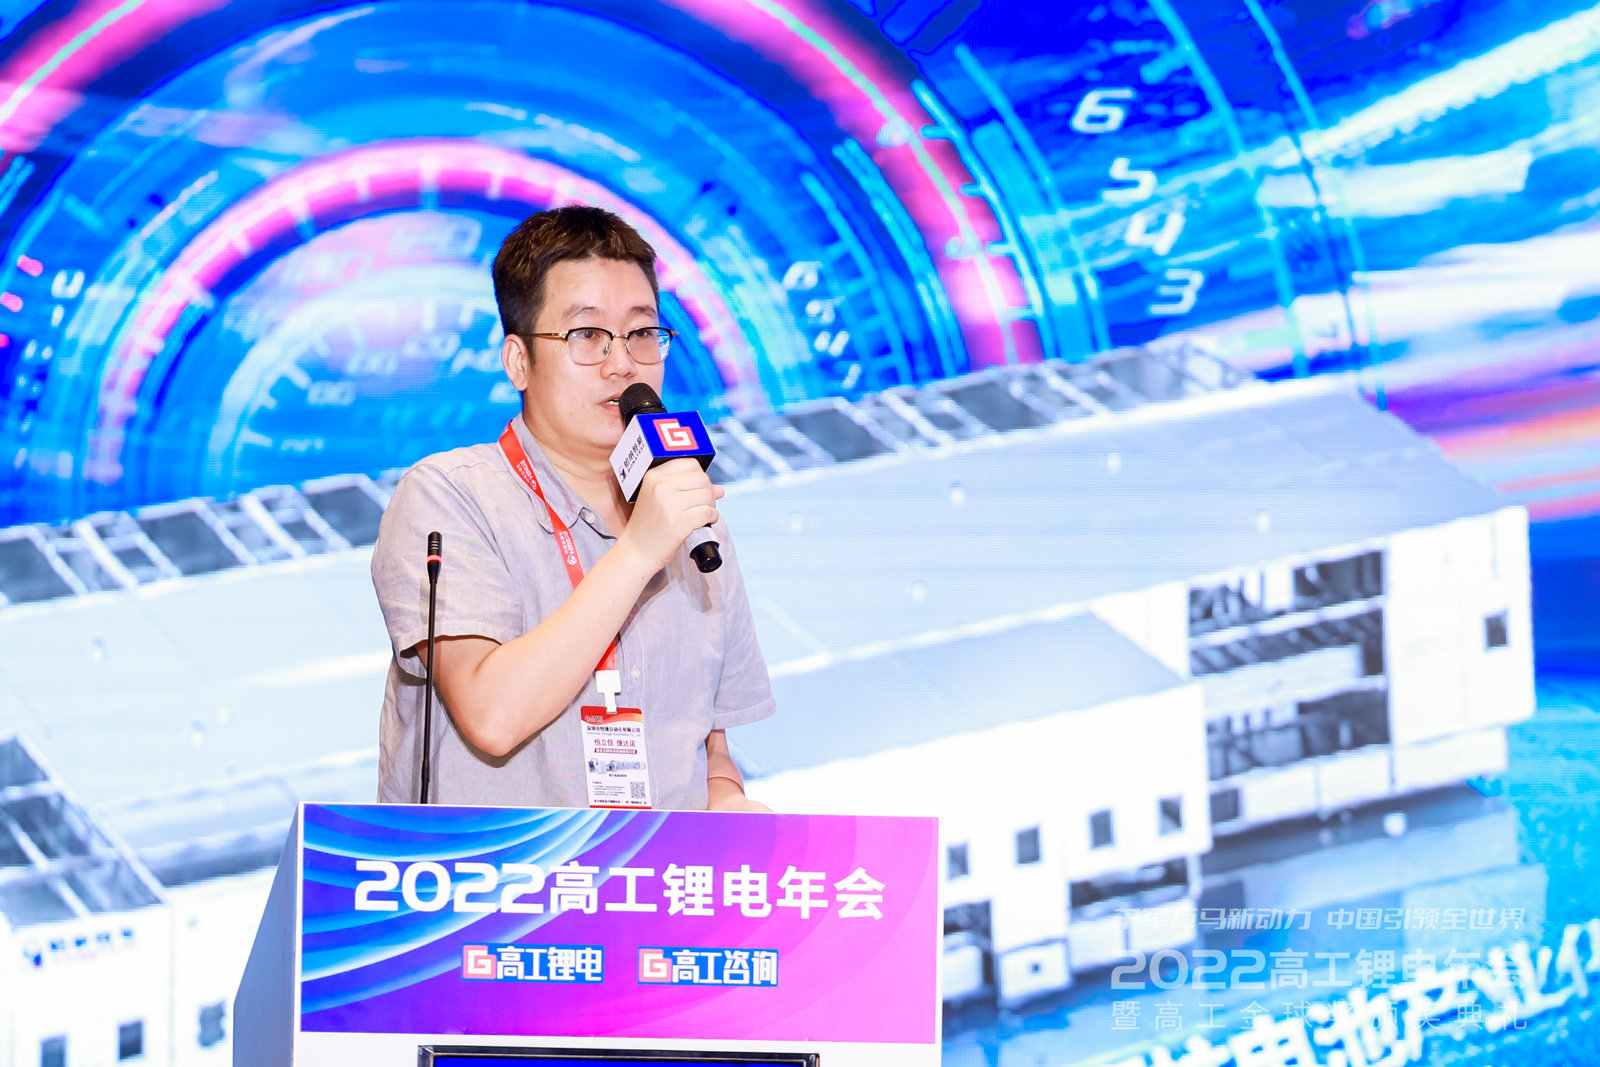 佳顺智能副总裁张金亮先生受邀在此次年会上发表演讲